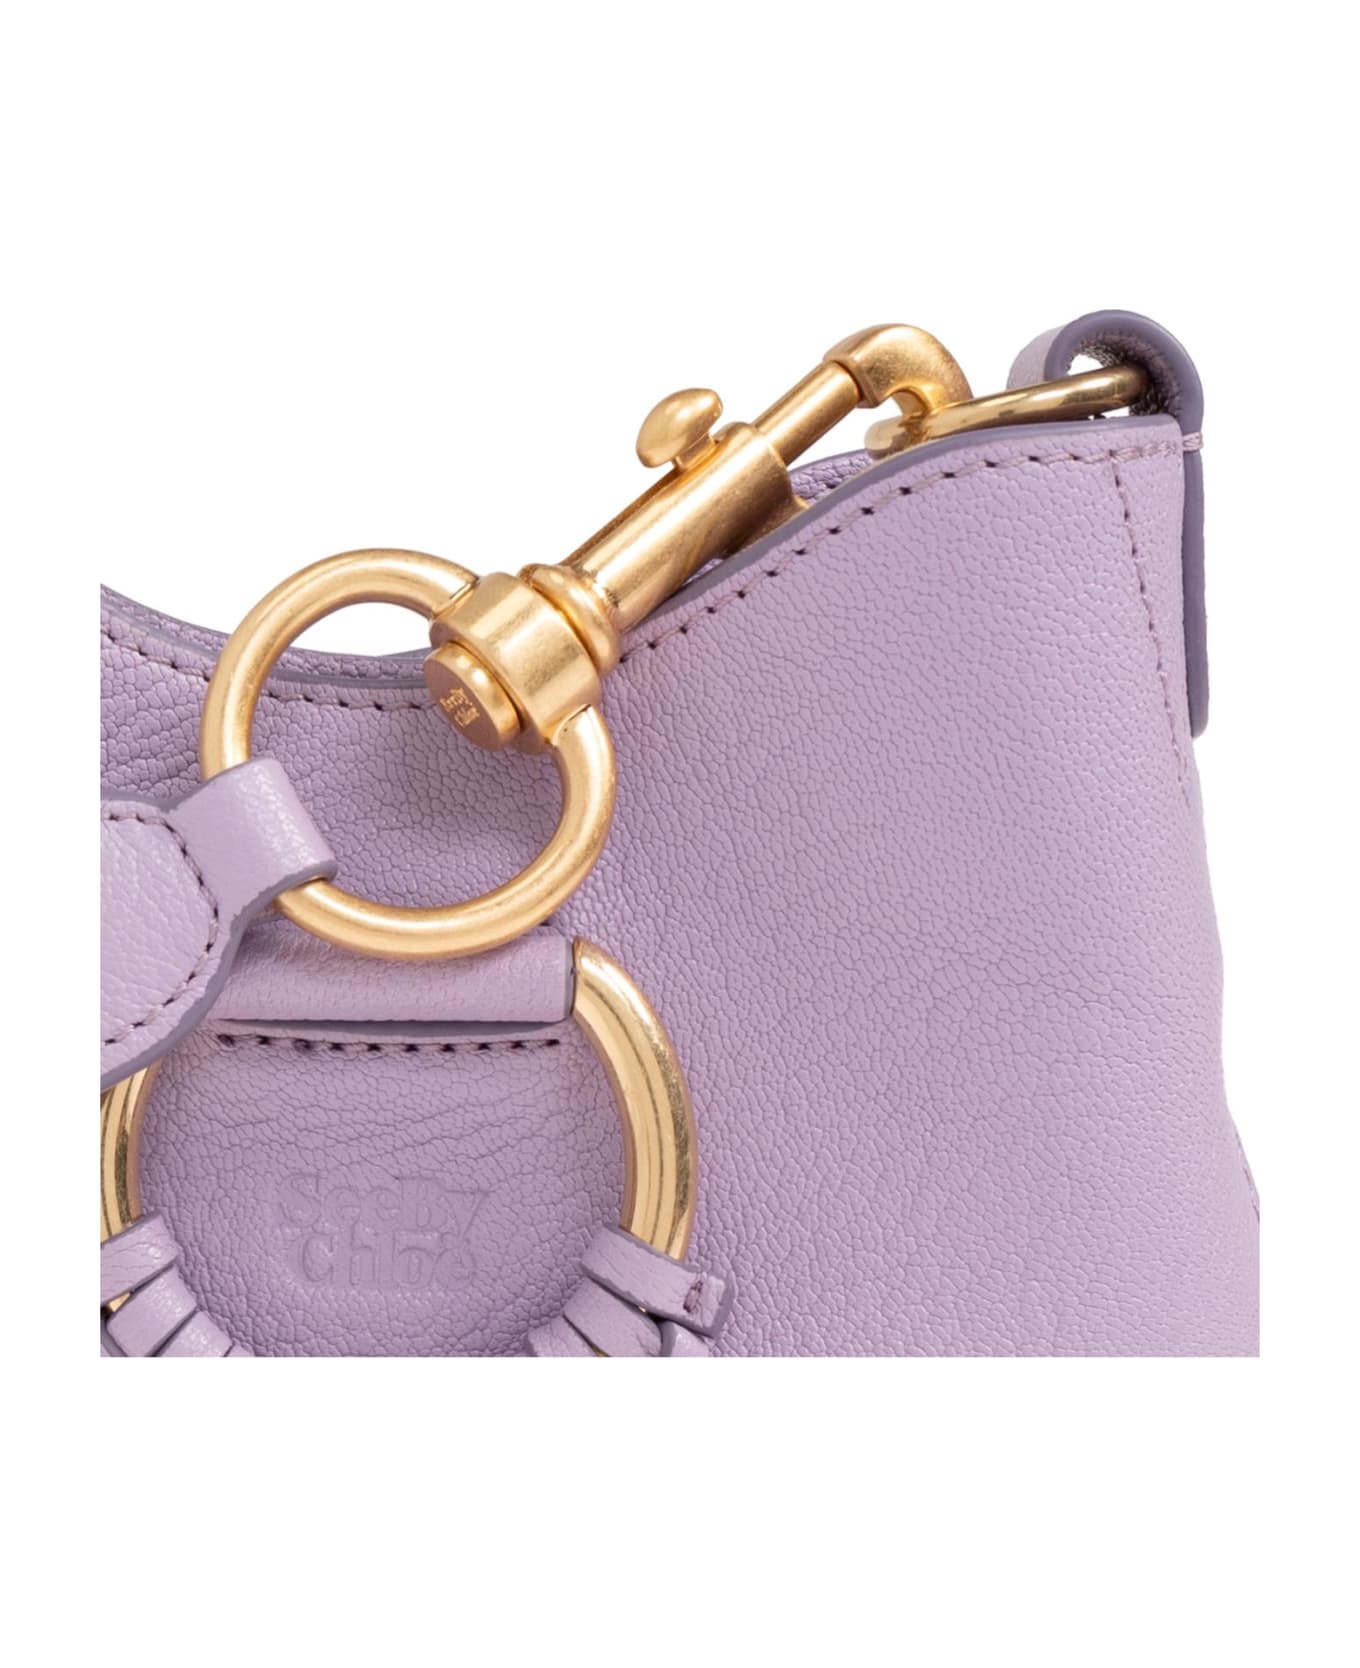 See by Chloé 'mara Small' Shoulder Bag - Lilac